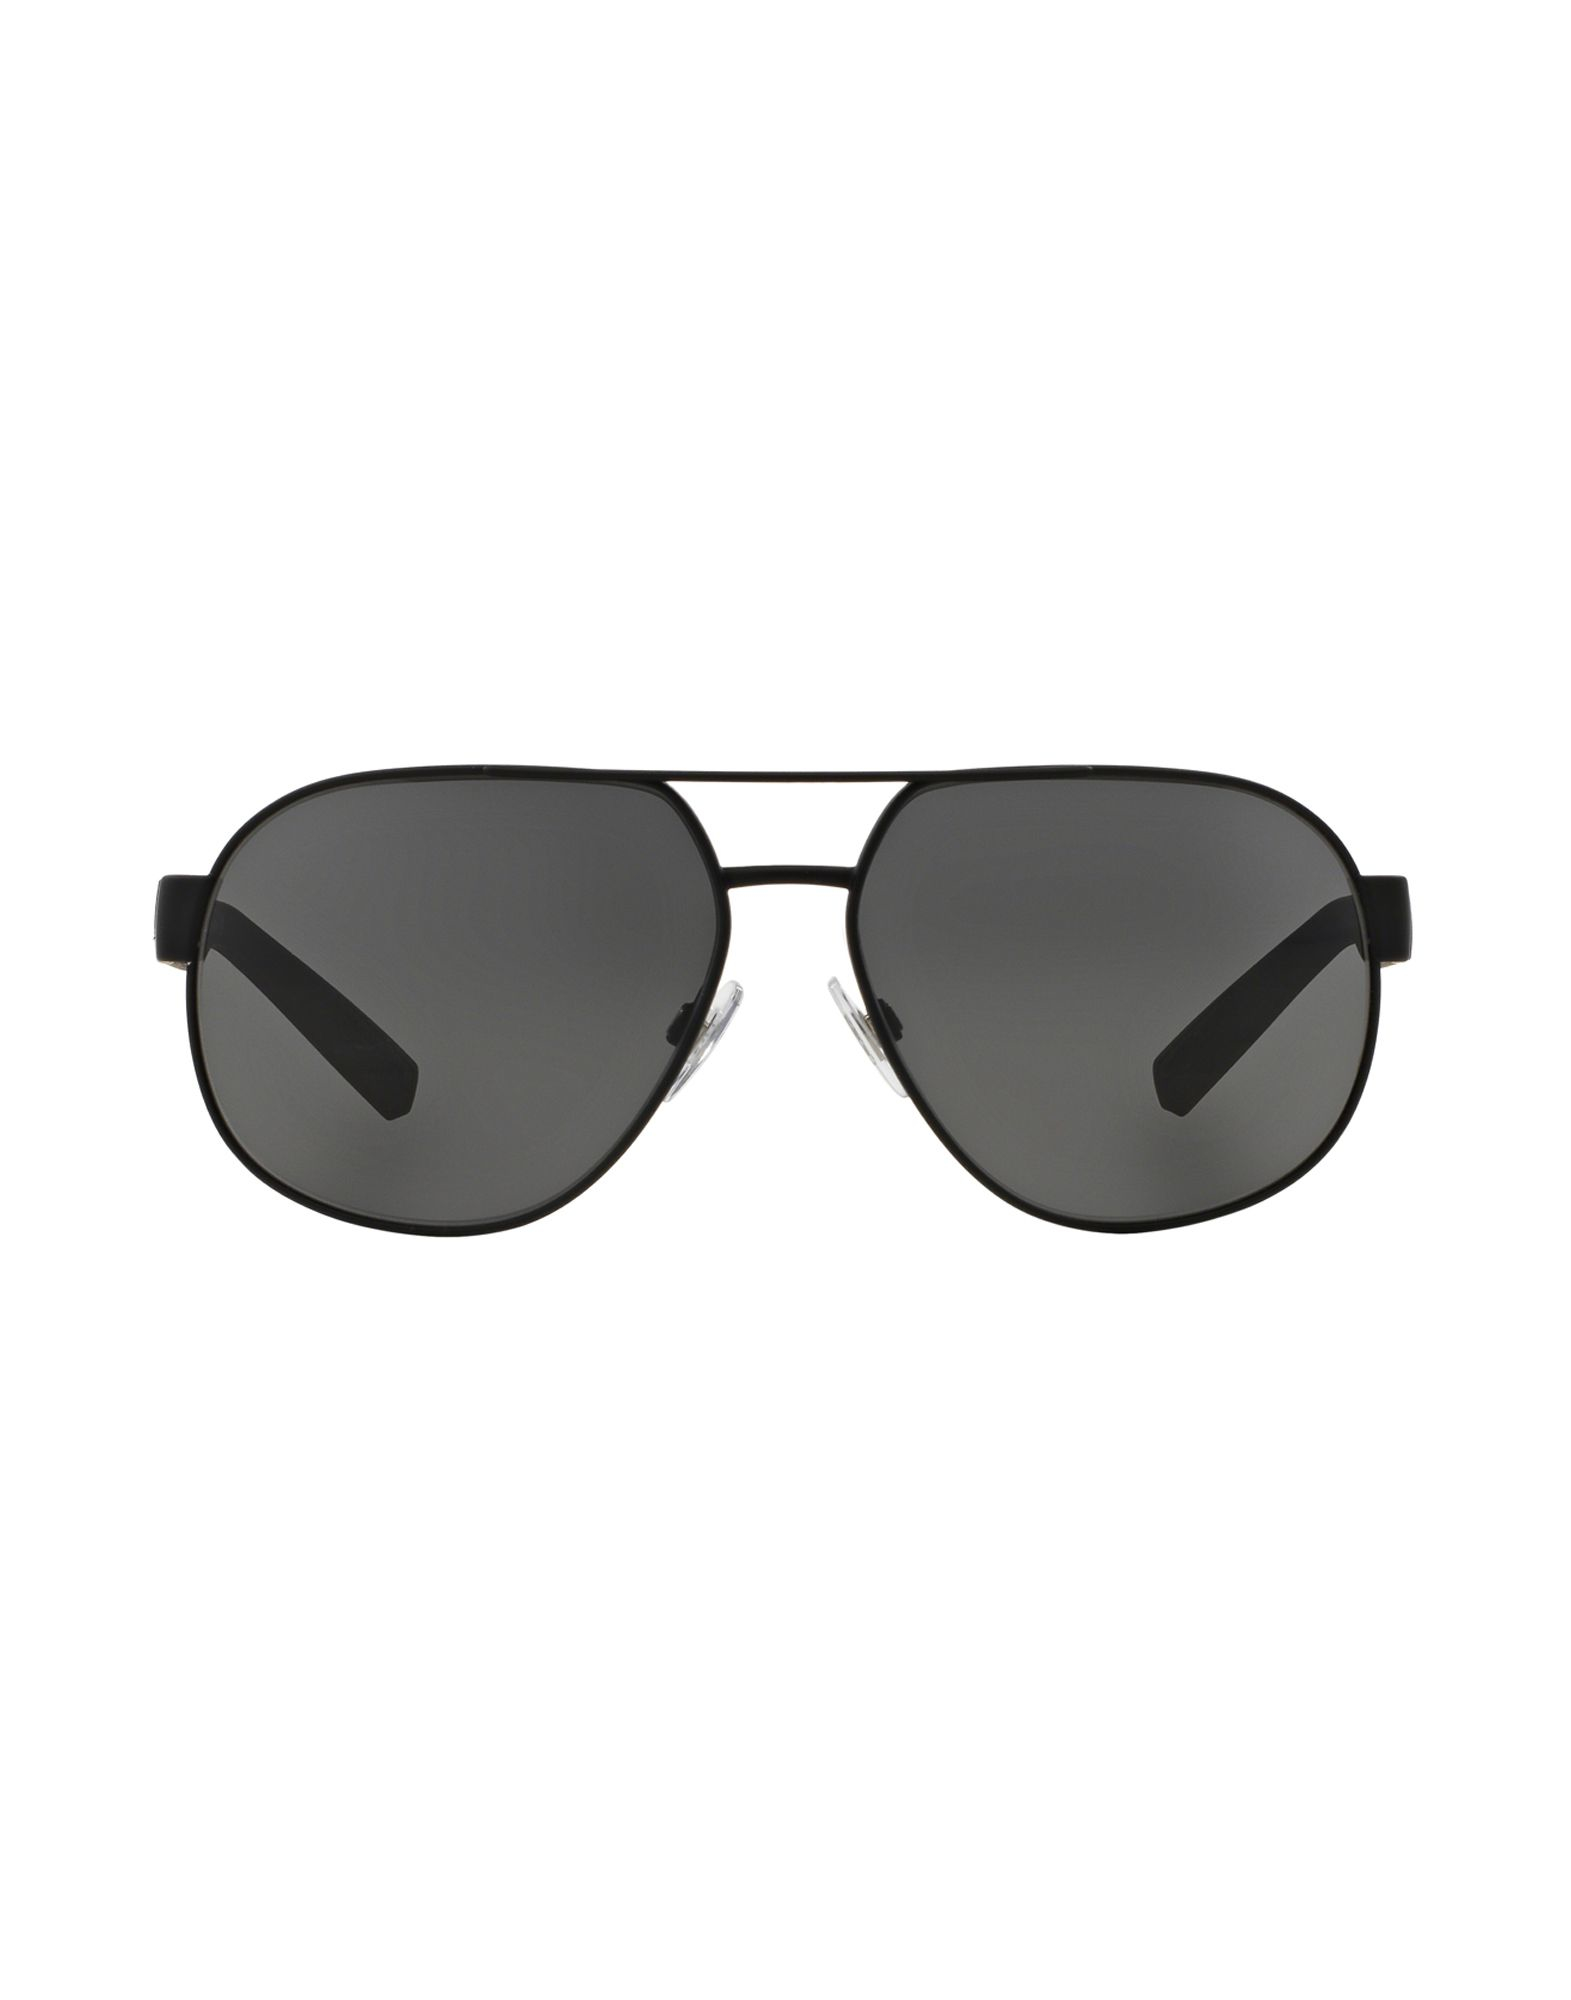 Lyst - Dolce & gabbana Sunglasses in Black for Men